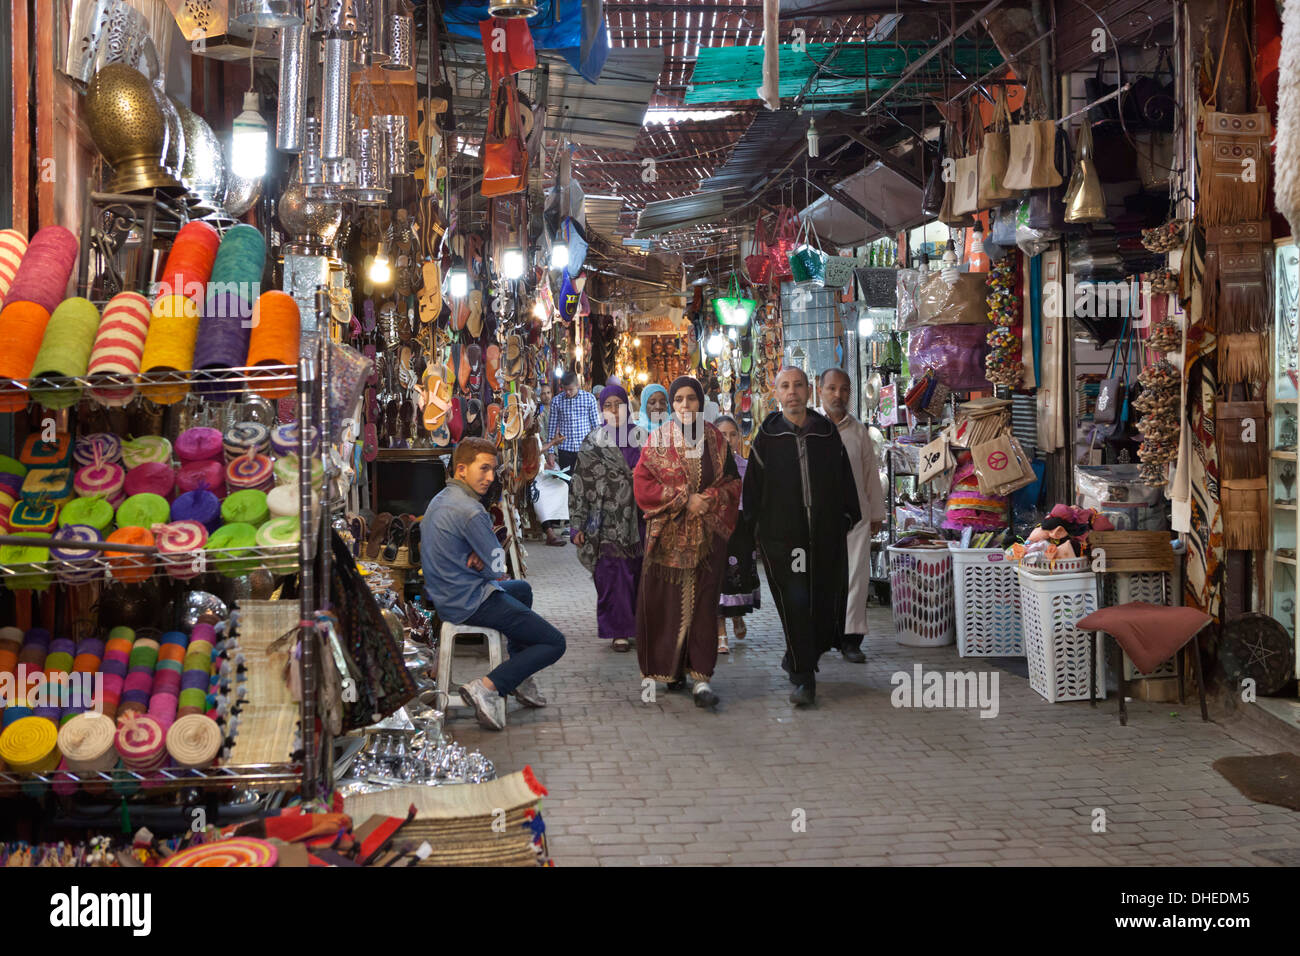 Der Souk, Marrakesch, Marokko, Nordafrika, Afrika Stockfoto